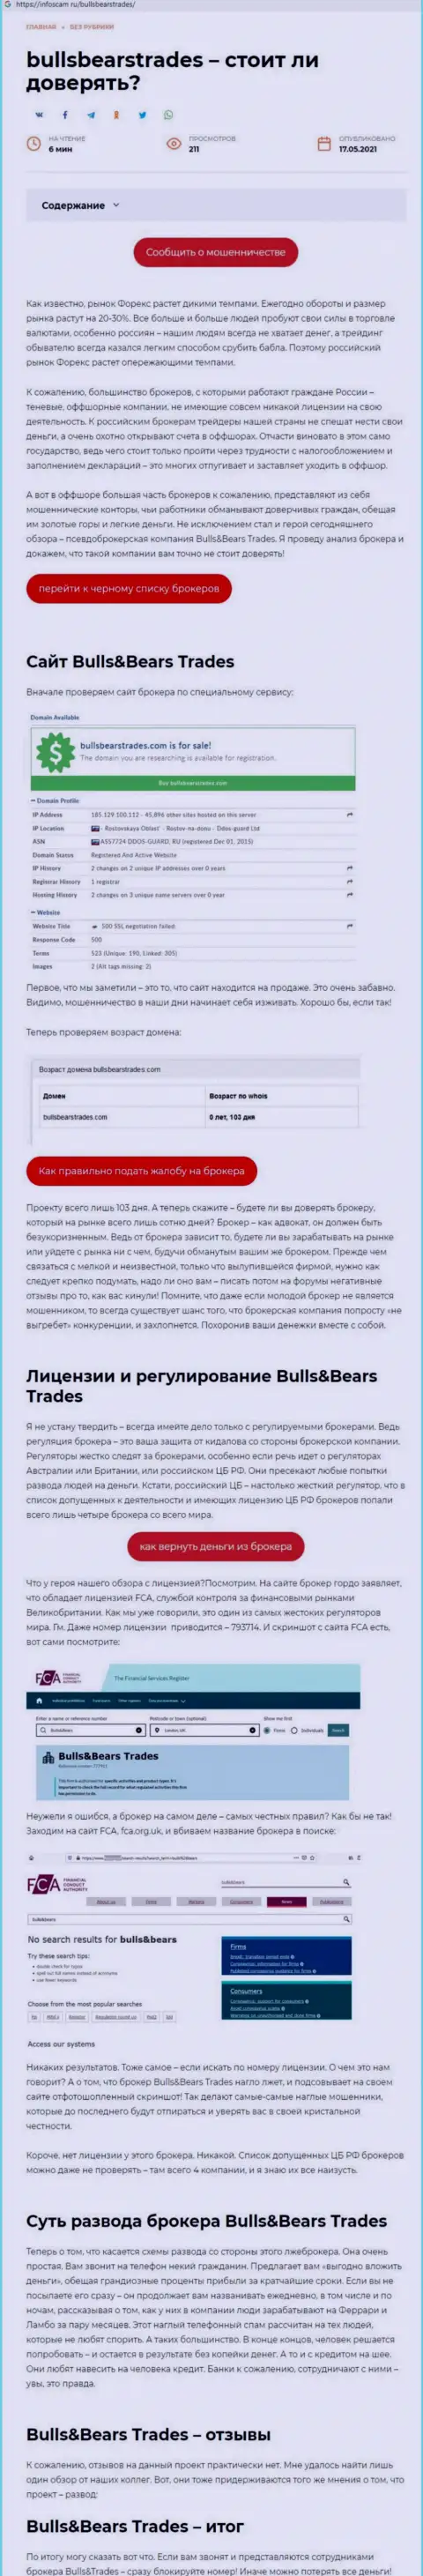 Bulls Bears Trades - это РАЗВОДИЛА !!! Способы грабежа (обзор мошеннических деяний)